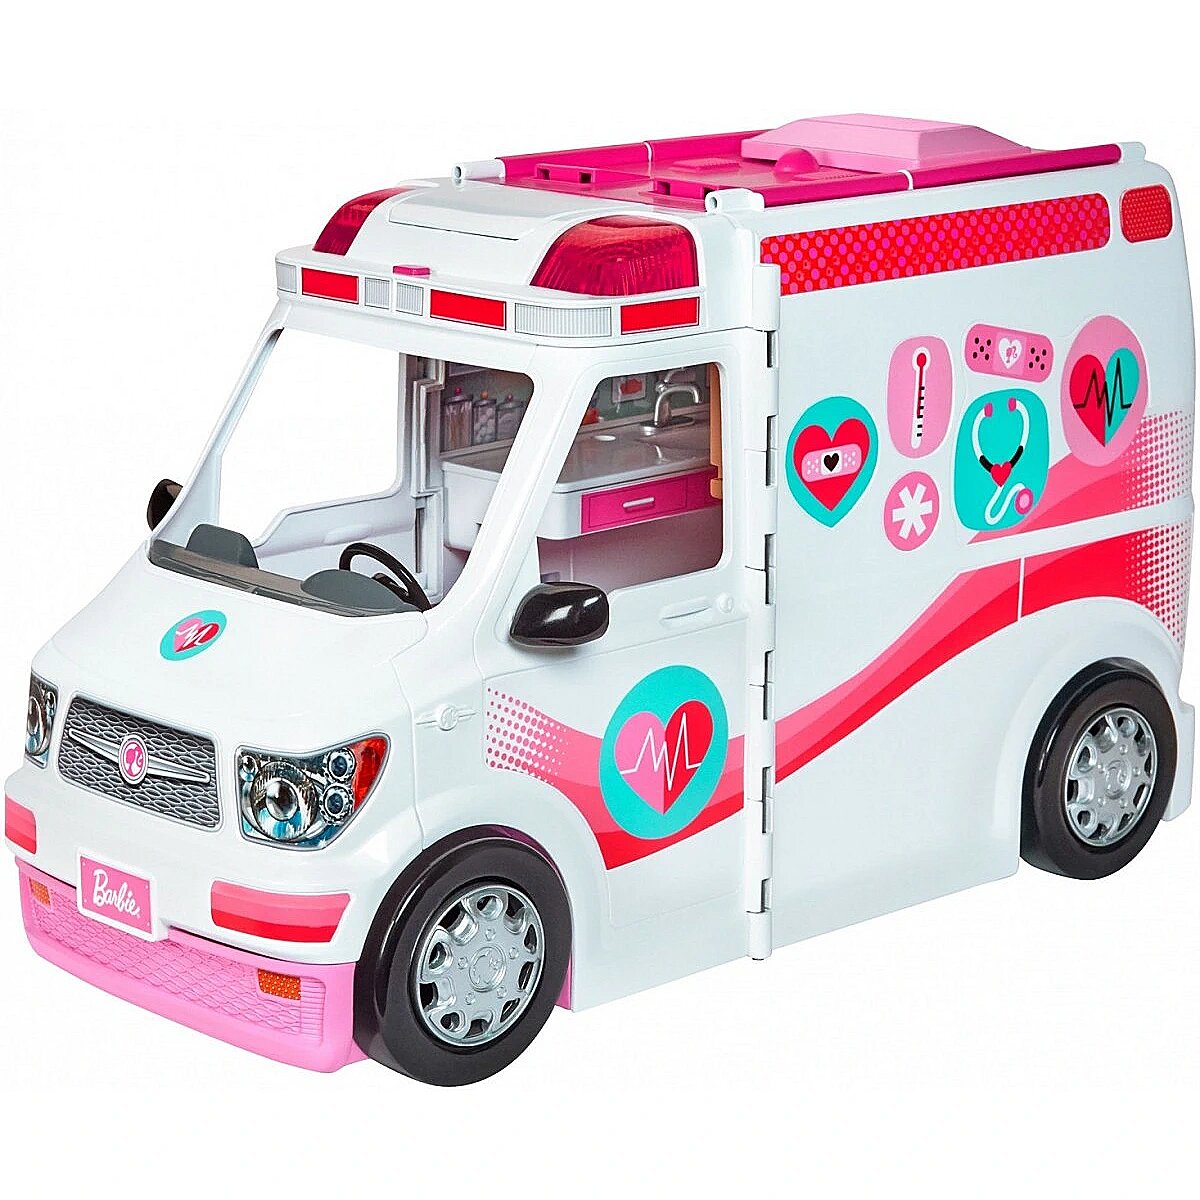 Машина игрушки игра. Игровой набор Барби машина скорой помощи frm19 с куклой. Машинка для Барби. Кукла Барби машина скорой помощи. Игрушку Автодомик для Барби.